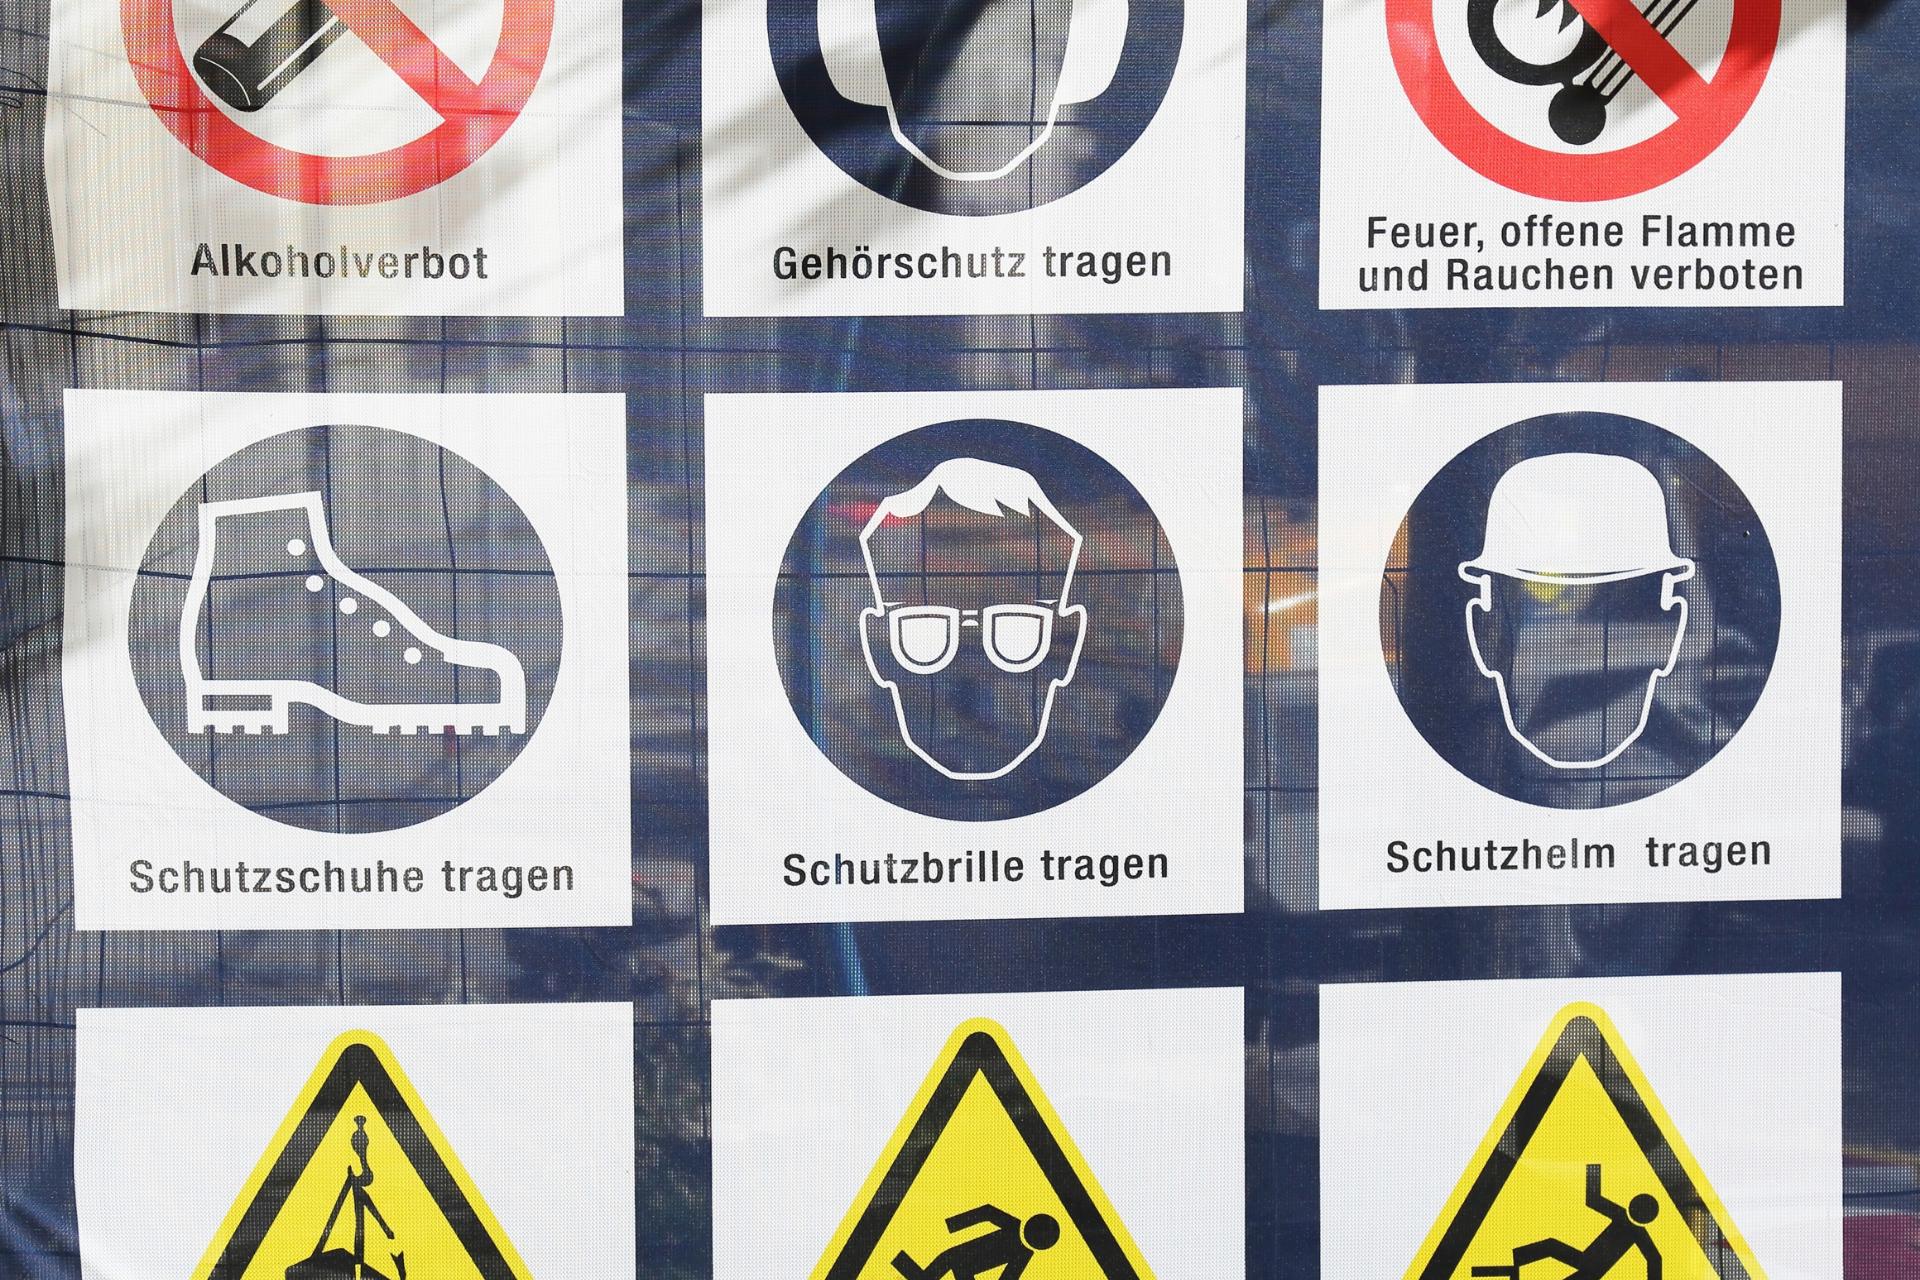 Icone che rappresentano regole diverse con testo in tedesco